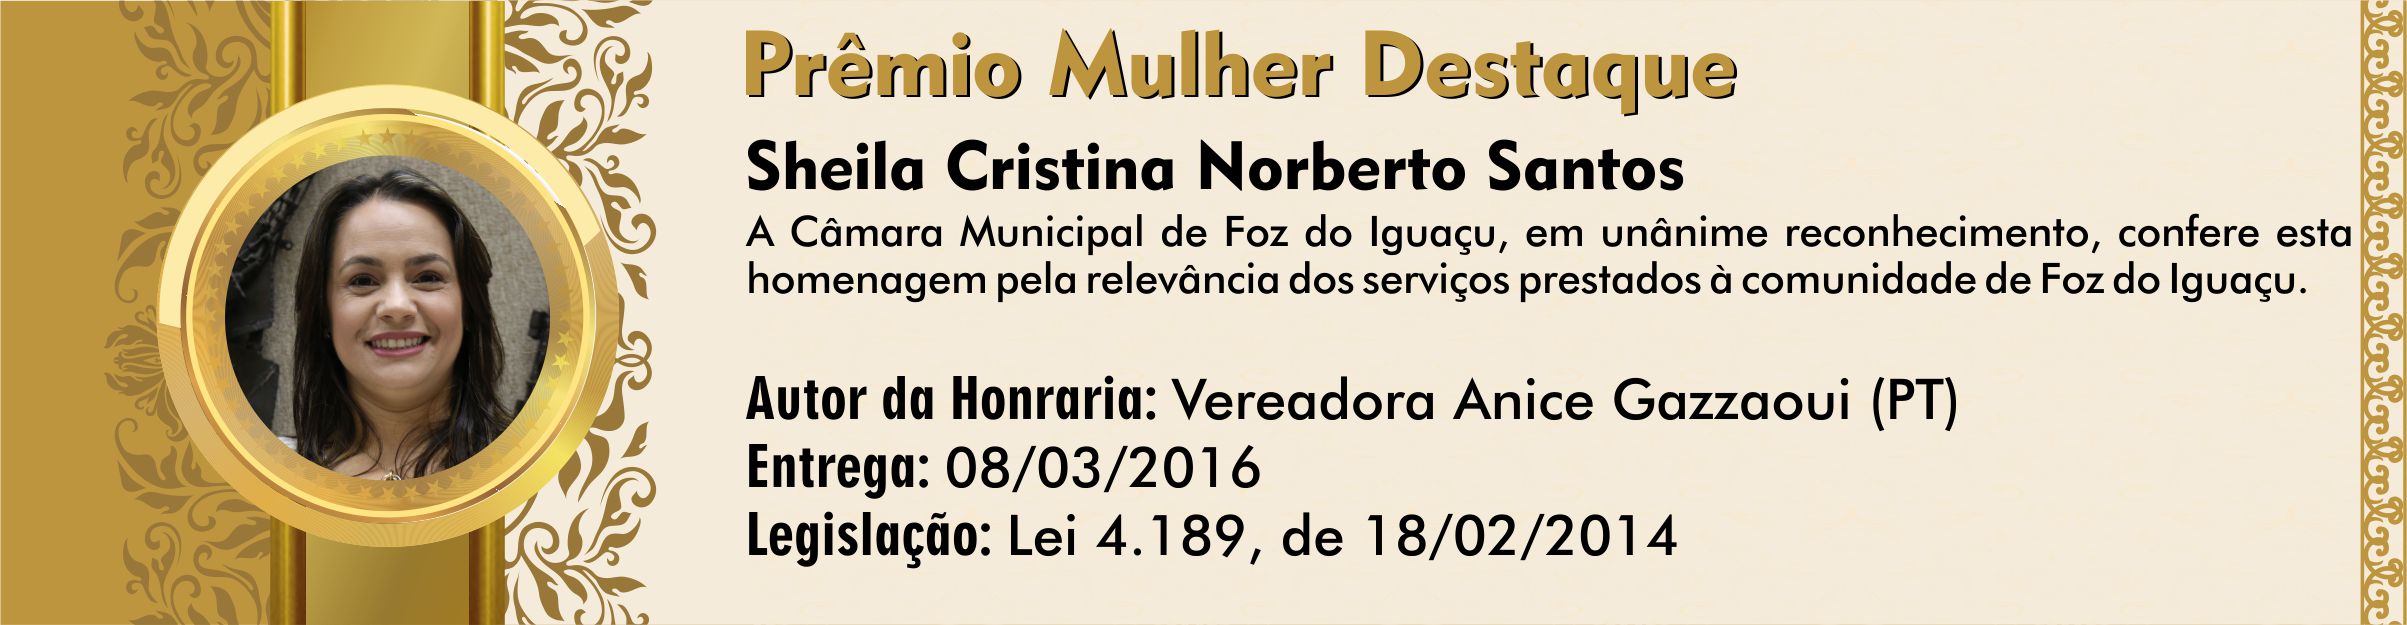 Sheila Cristina Norberto Santos